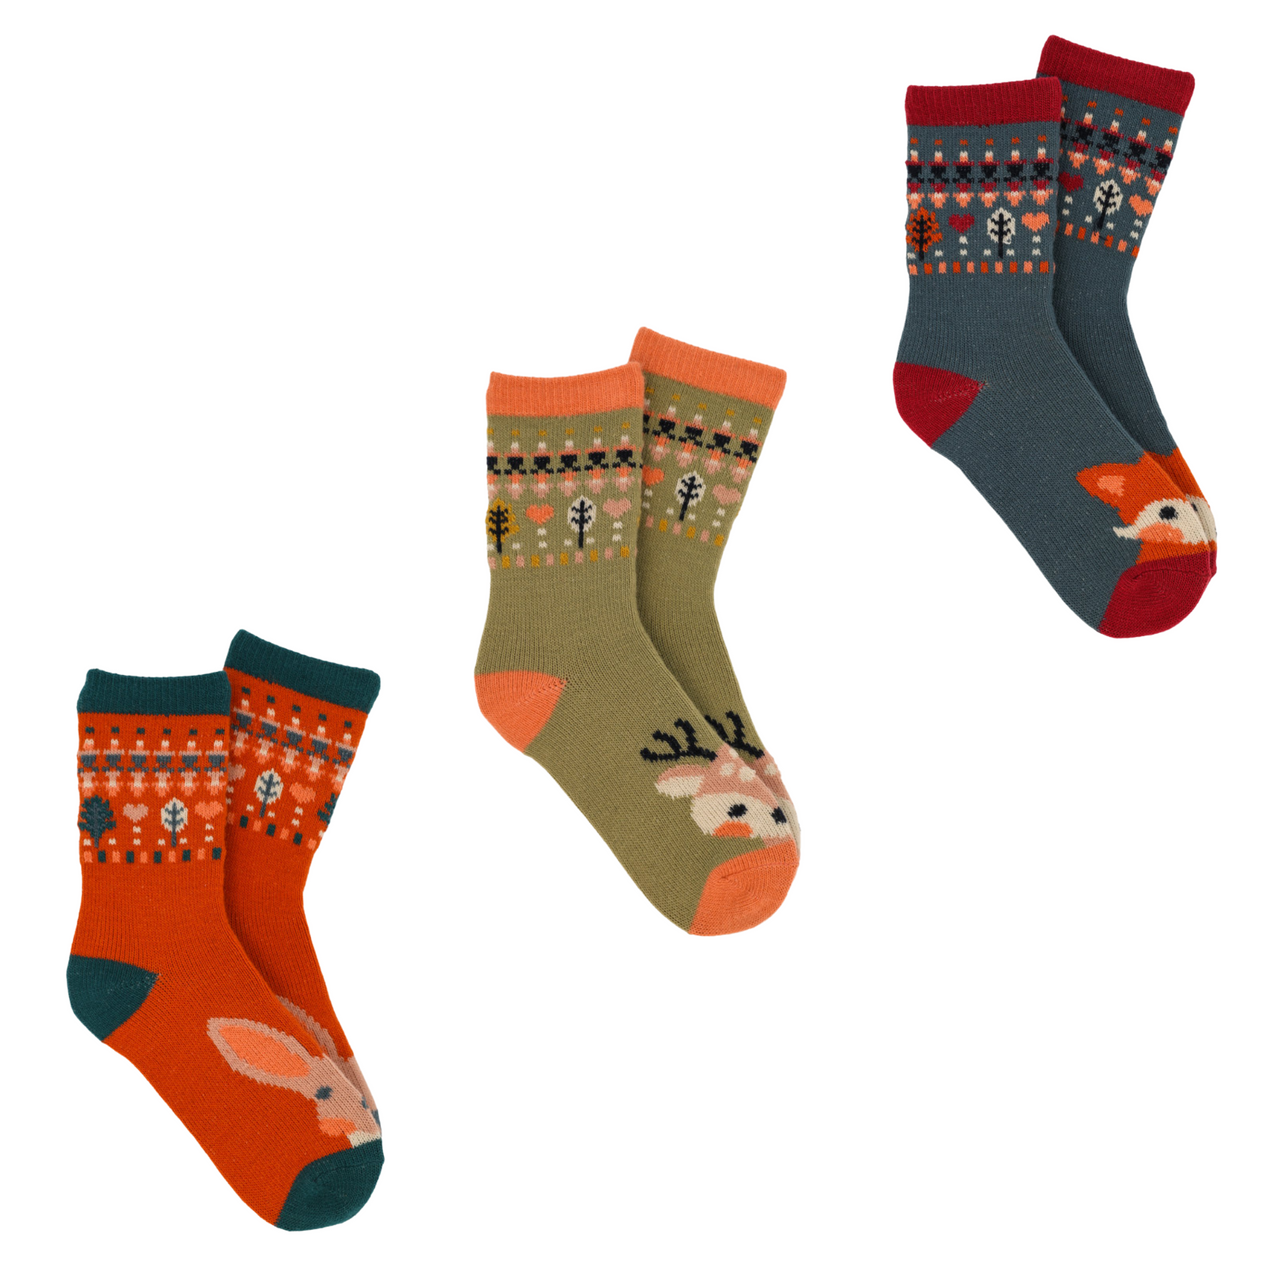 Powder Women's Knitted Ankle Socks - Hare, Fox or Deer